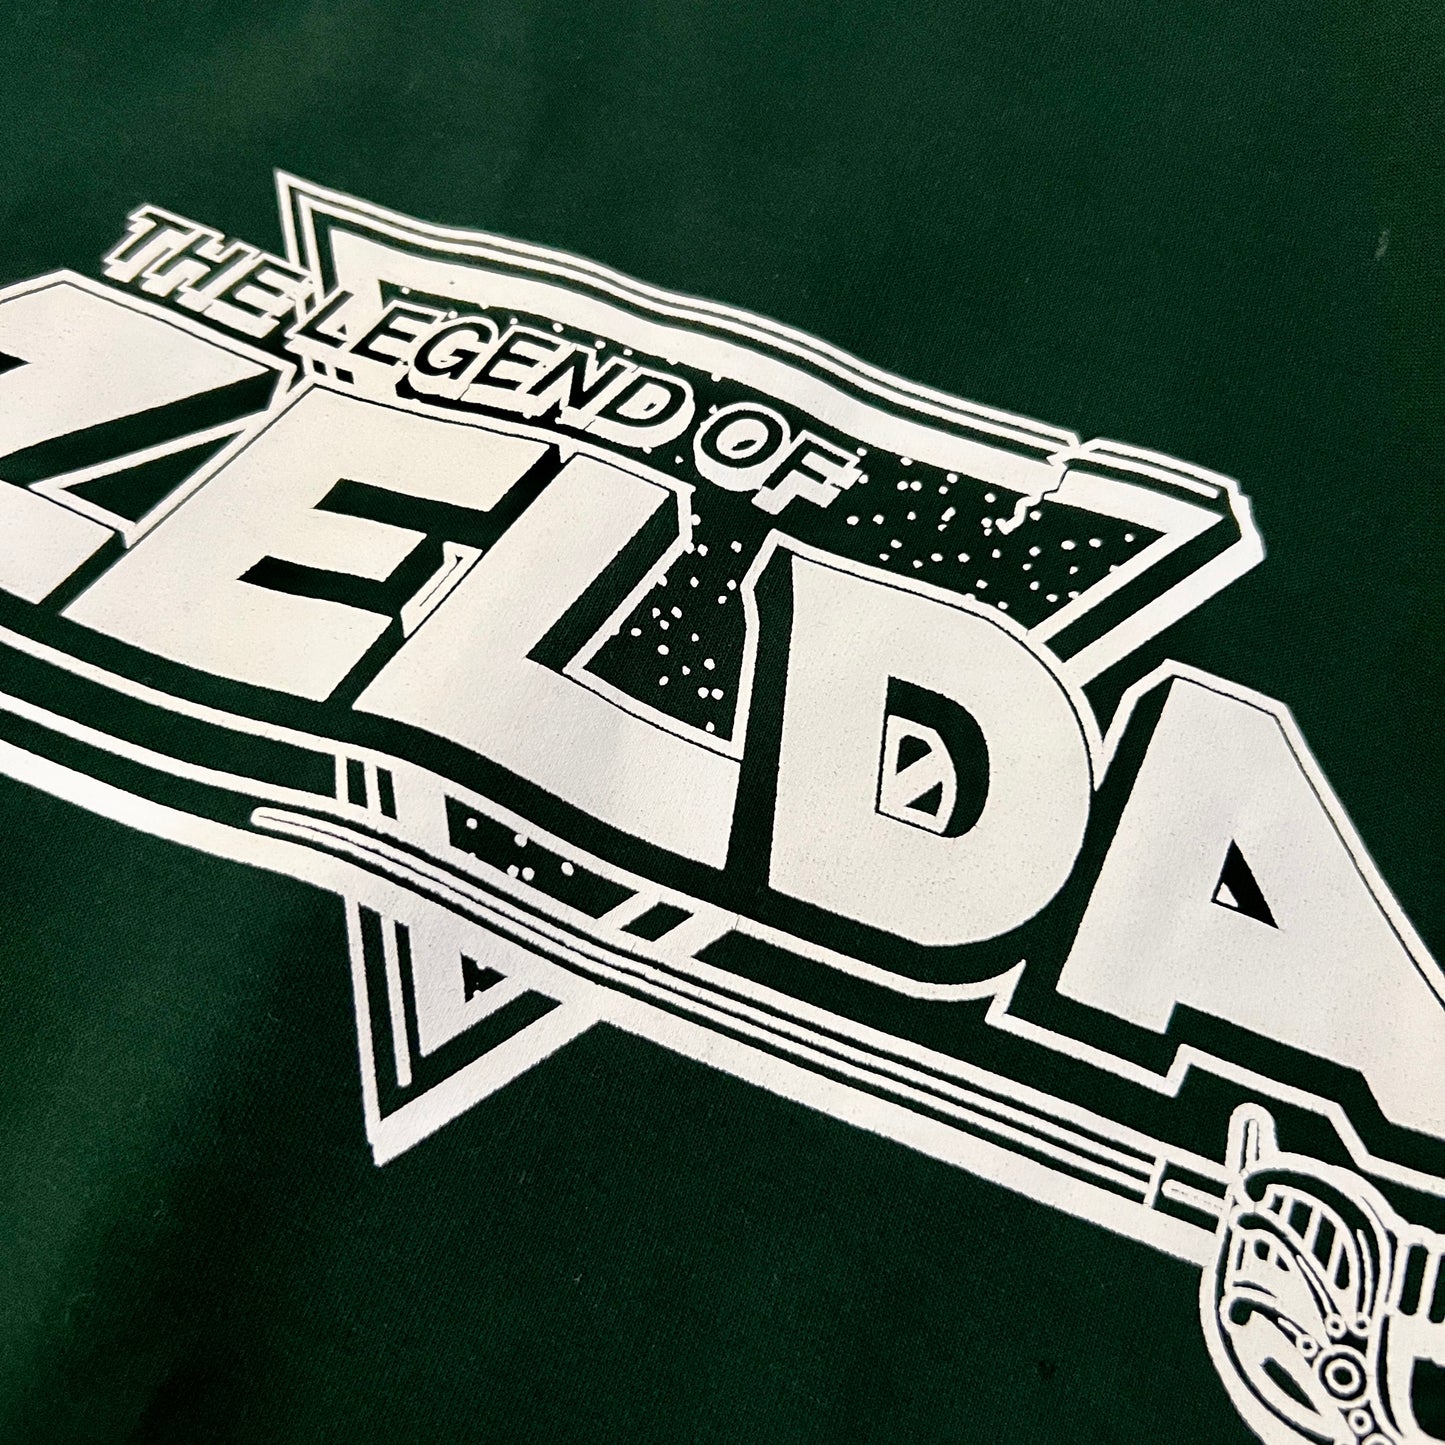 Pre-Owned Vintage Legend of Zelda Track Jacket